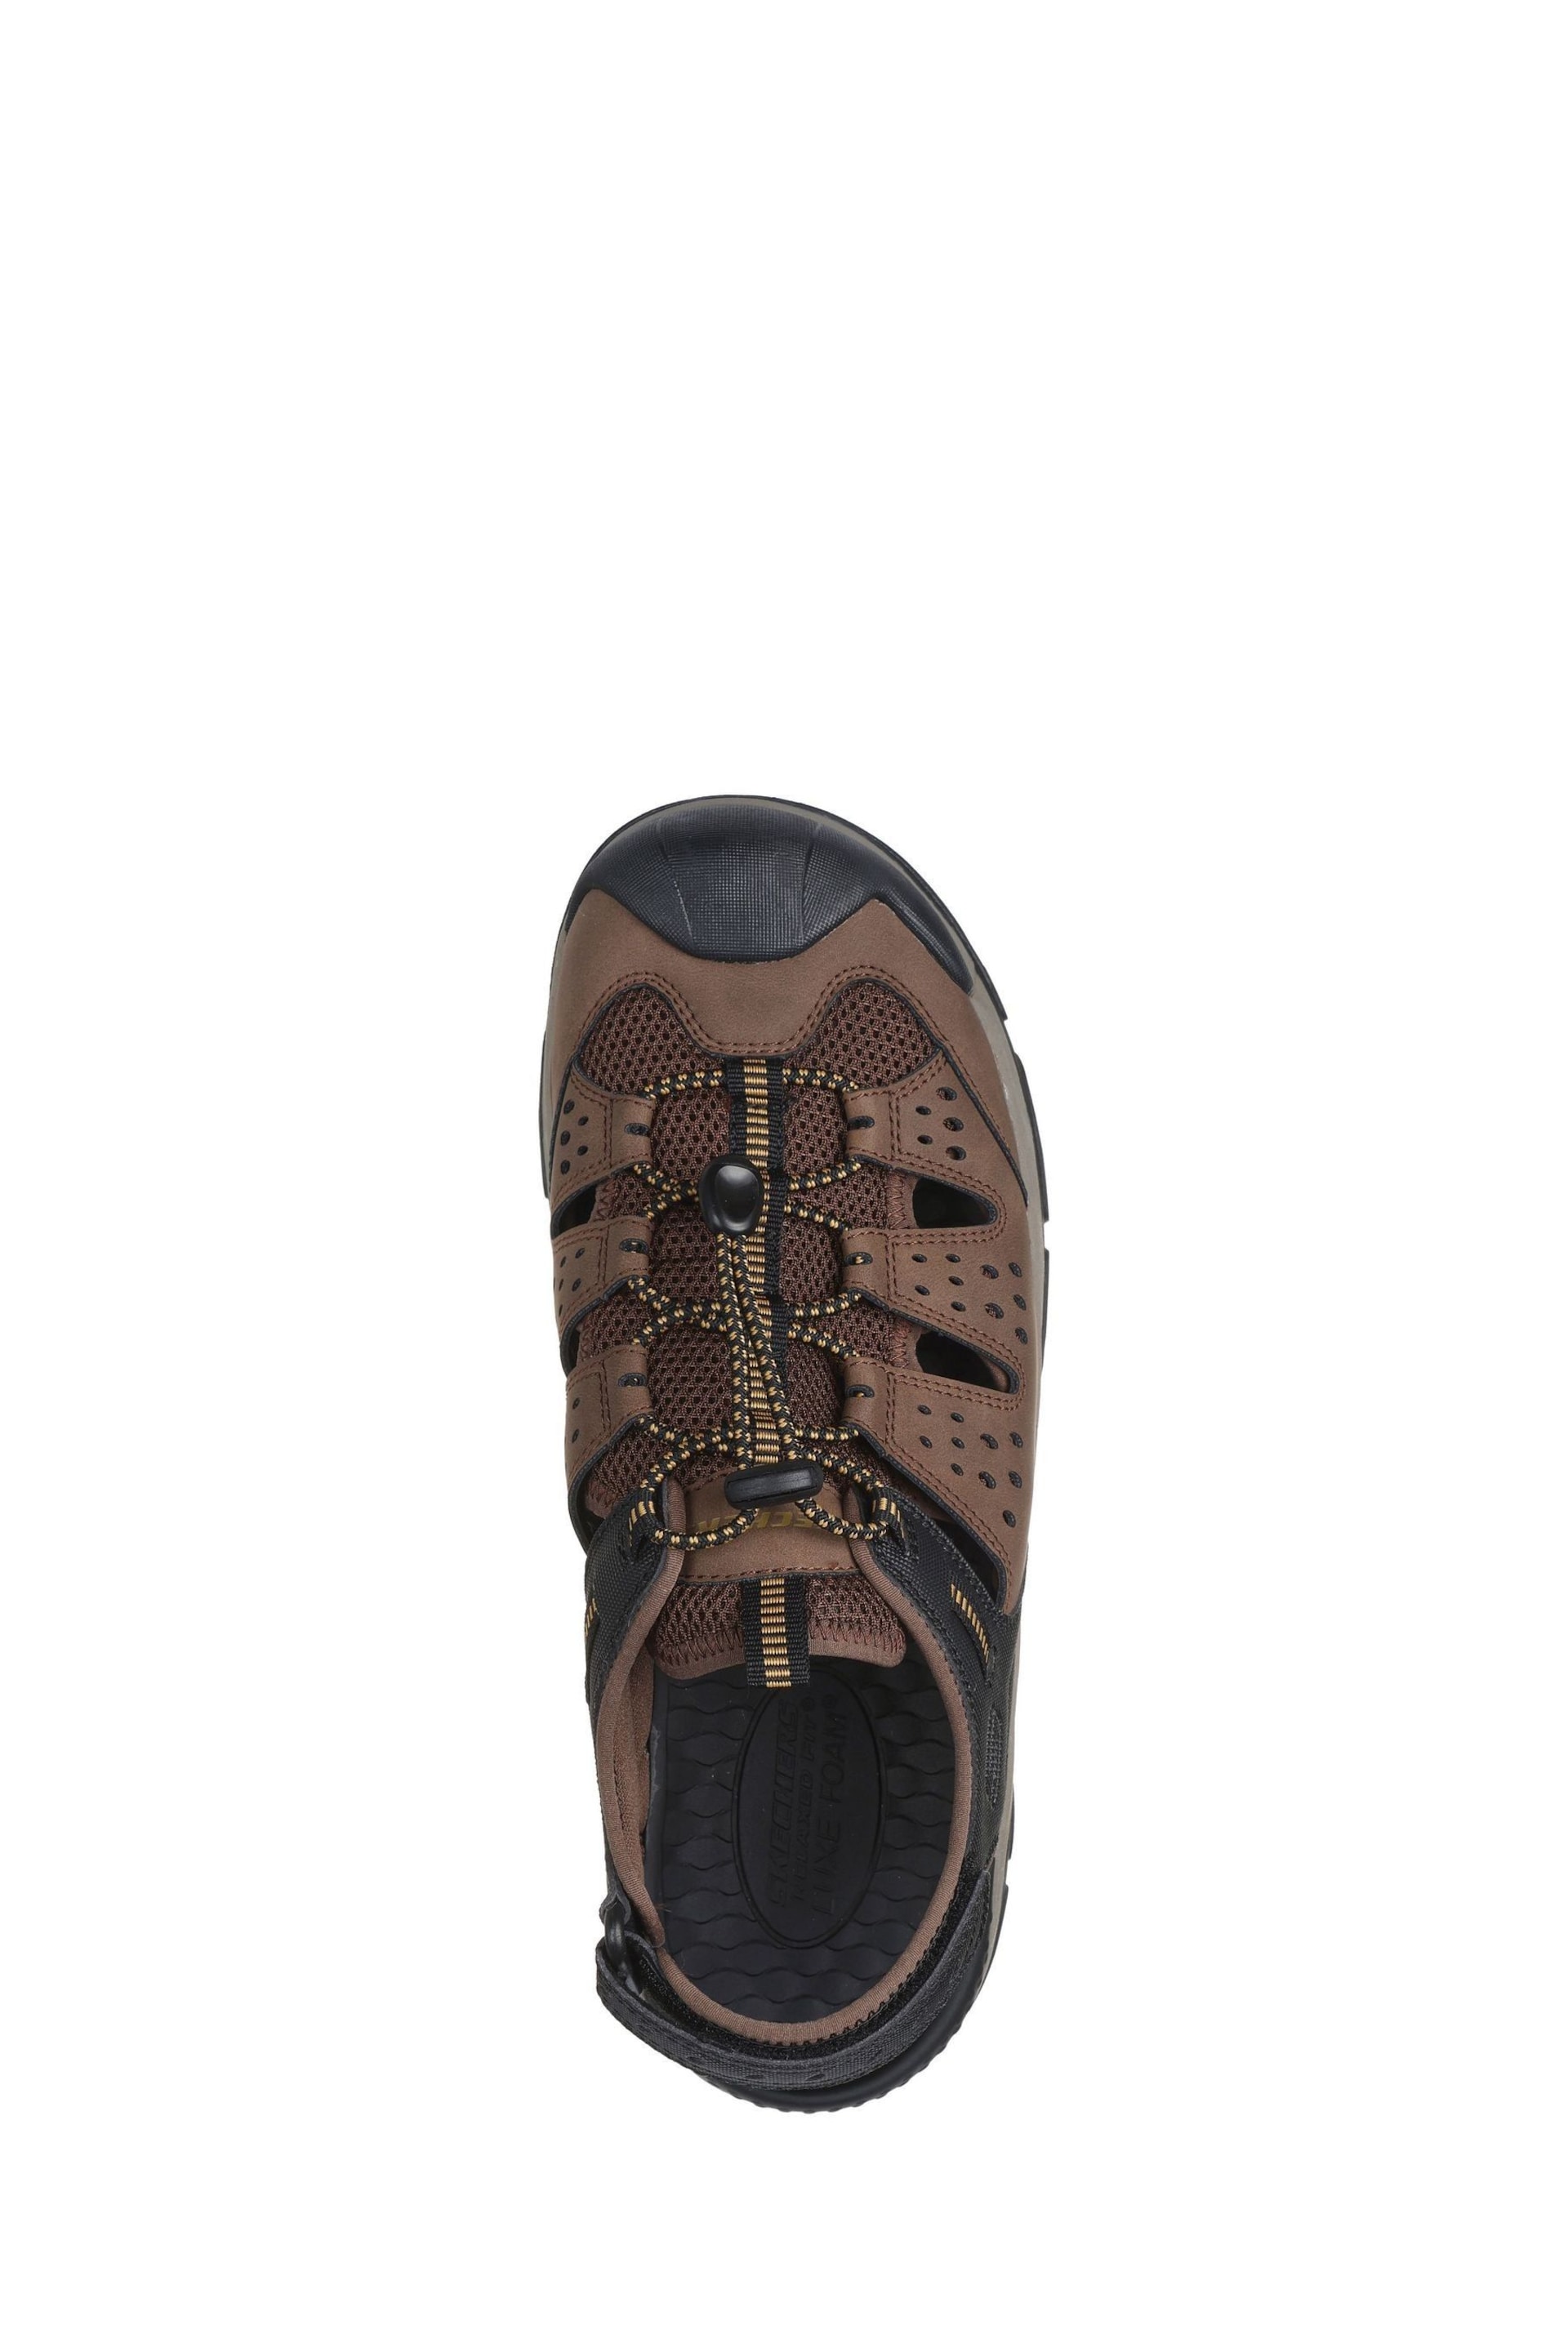 Skechers Brown Tresmen Menard Sandals - Image 3 of 4